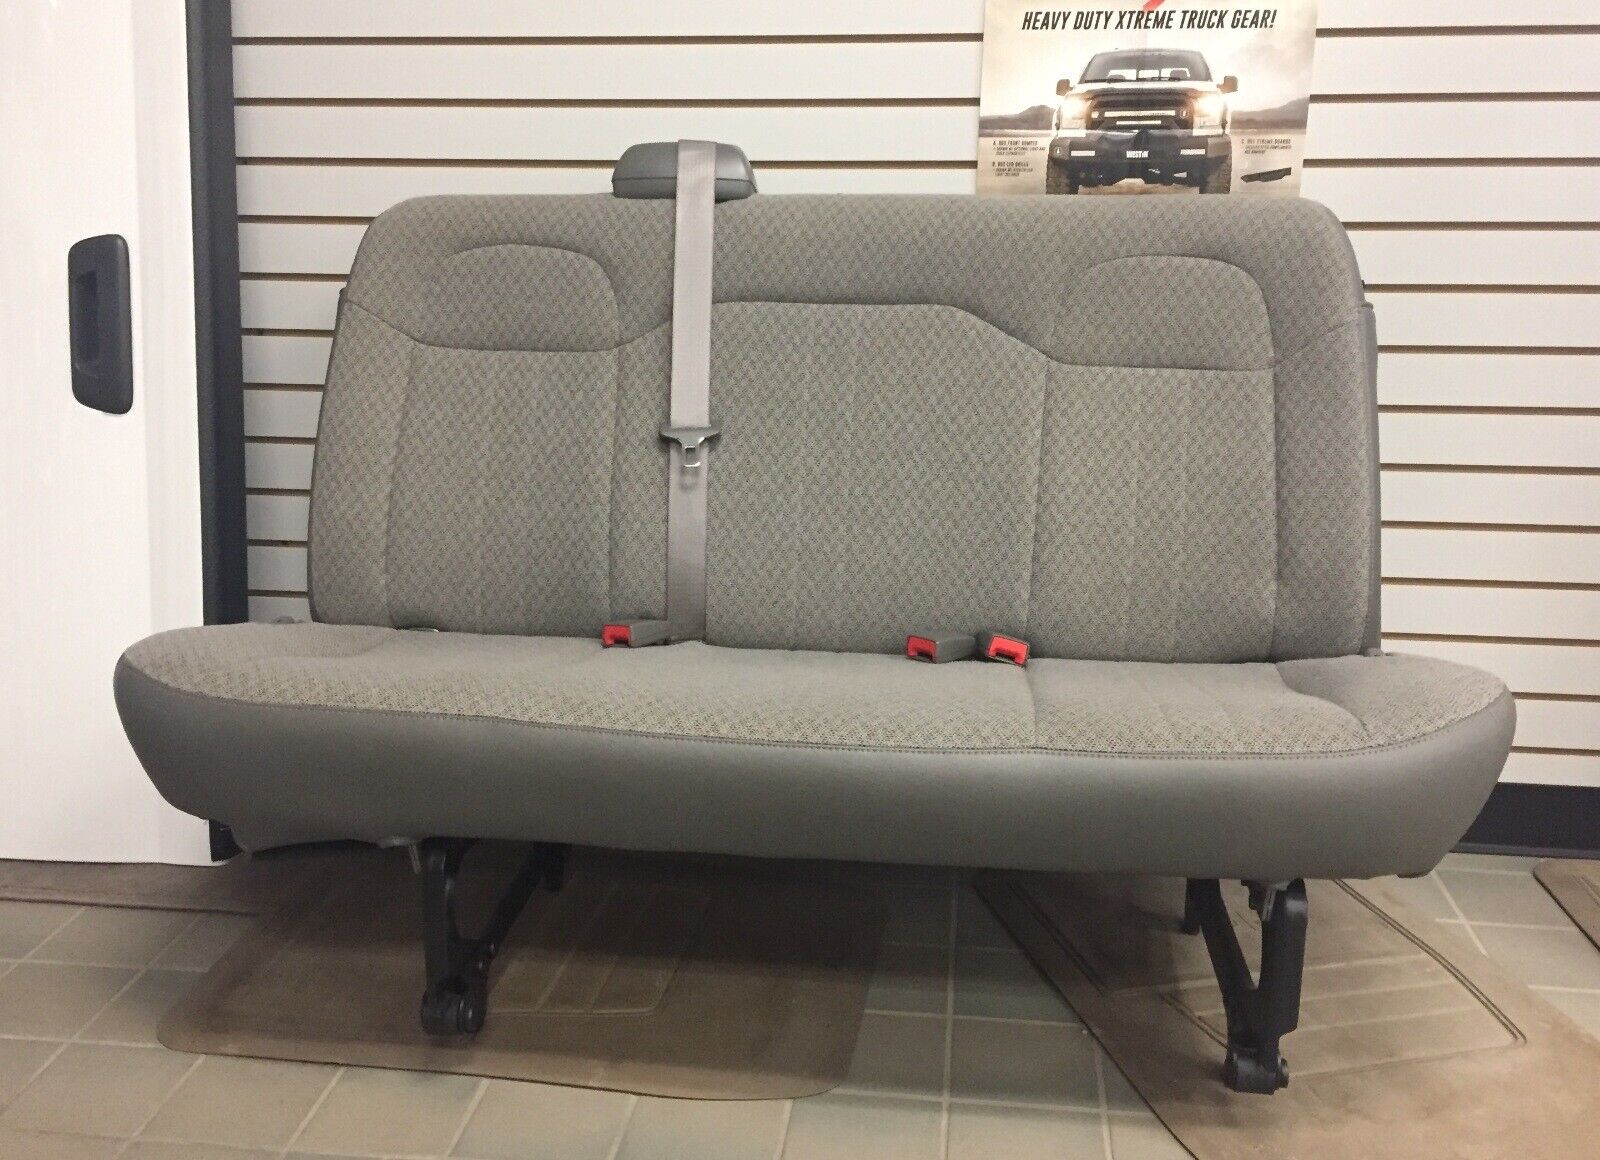 11-23 Chevy Express/GMC Savana Van 2nd/3rd row 3-Pass Gray Cloth Bench Seat